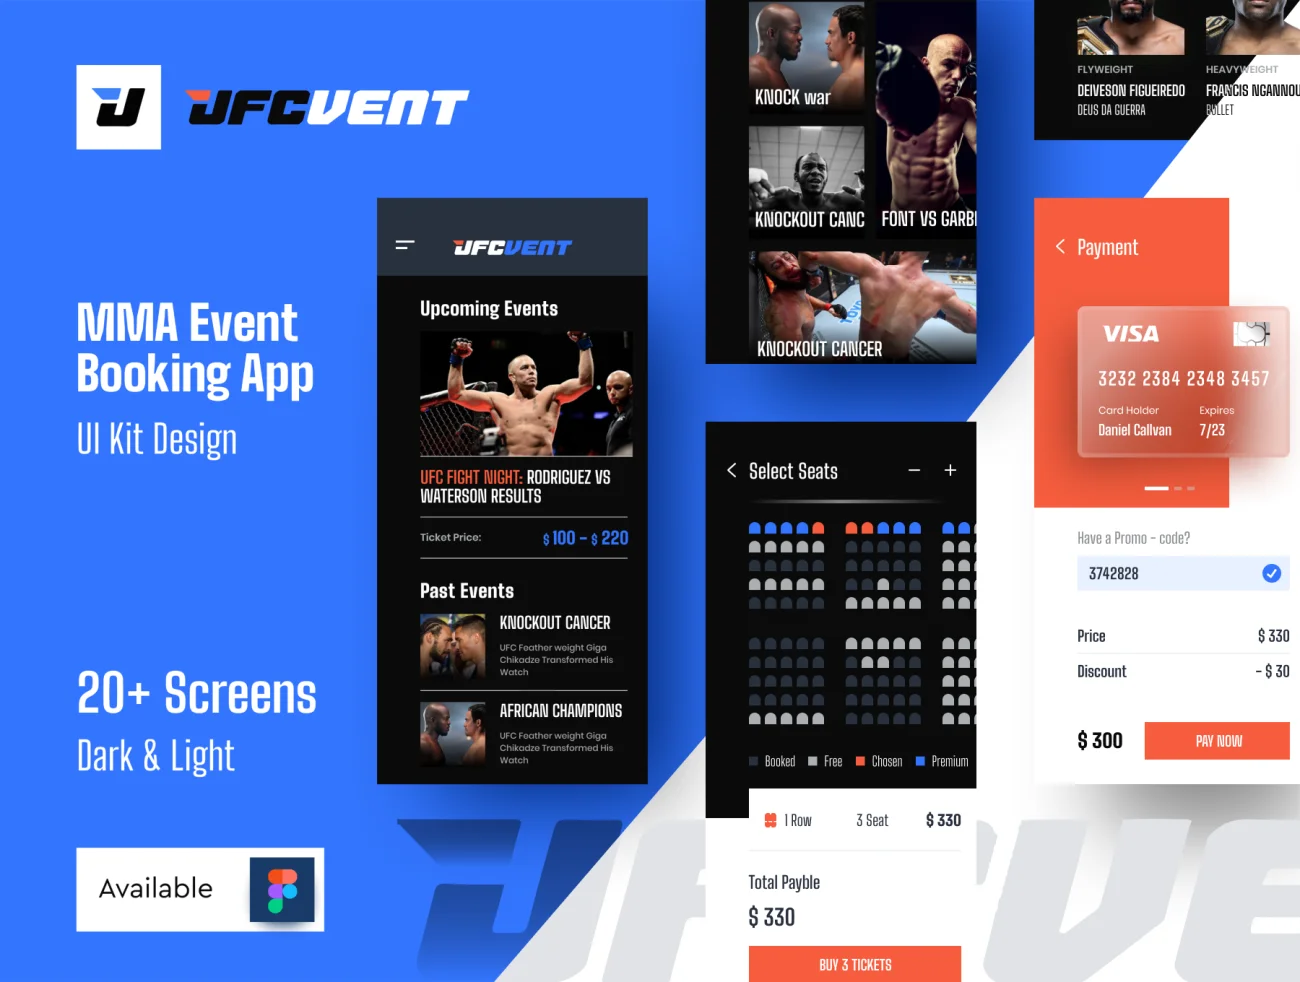 20屏完整版UFC MMA拳击摔跤综合格斗赛事比赛应用 UFC VENT – MMA Event Booking app插图1